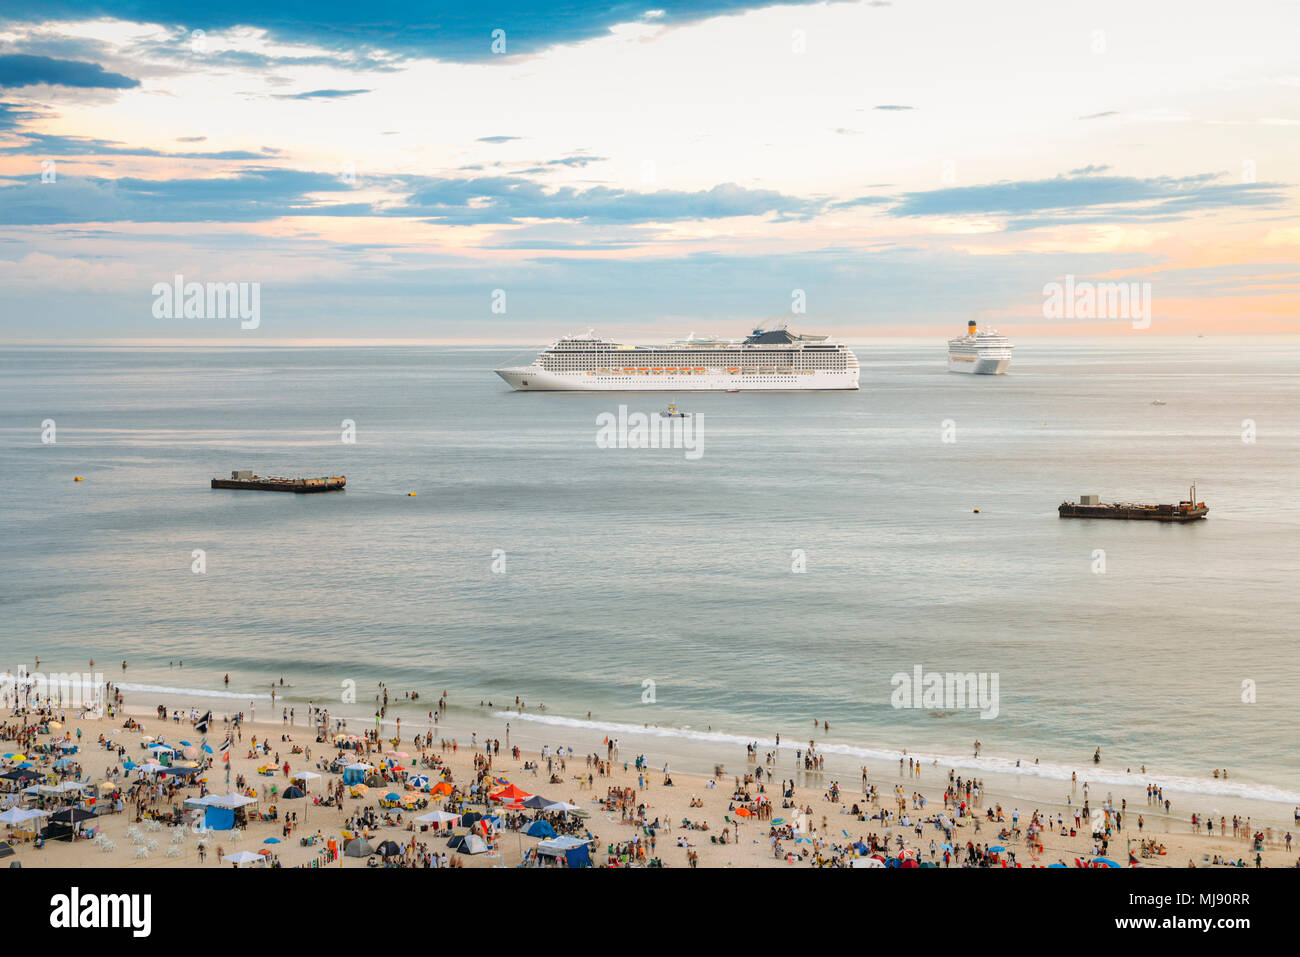 Vue aérienne de la plage bondée avec deux grands navires de croisière à l'horizon au coucher du soleil. Banque D'Images